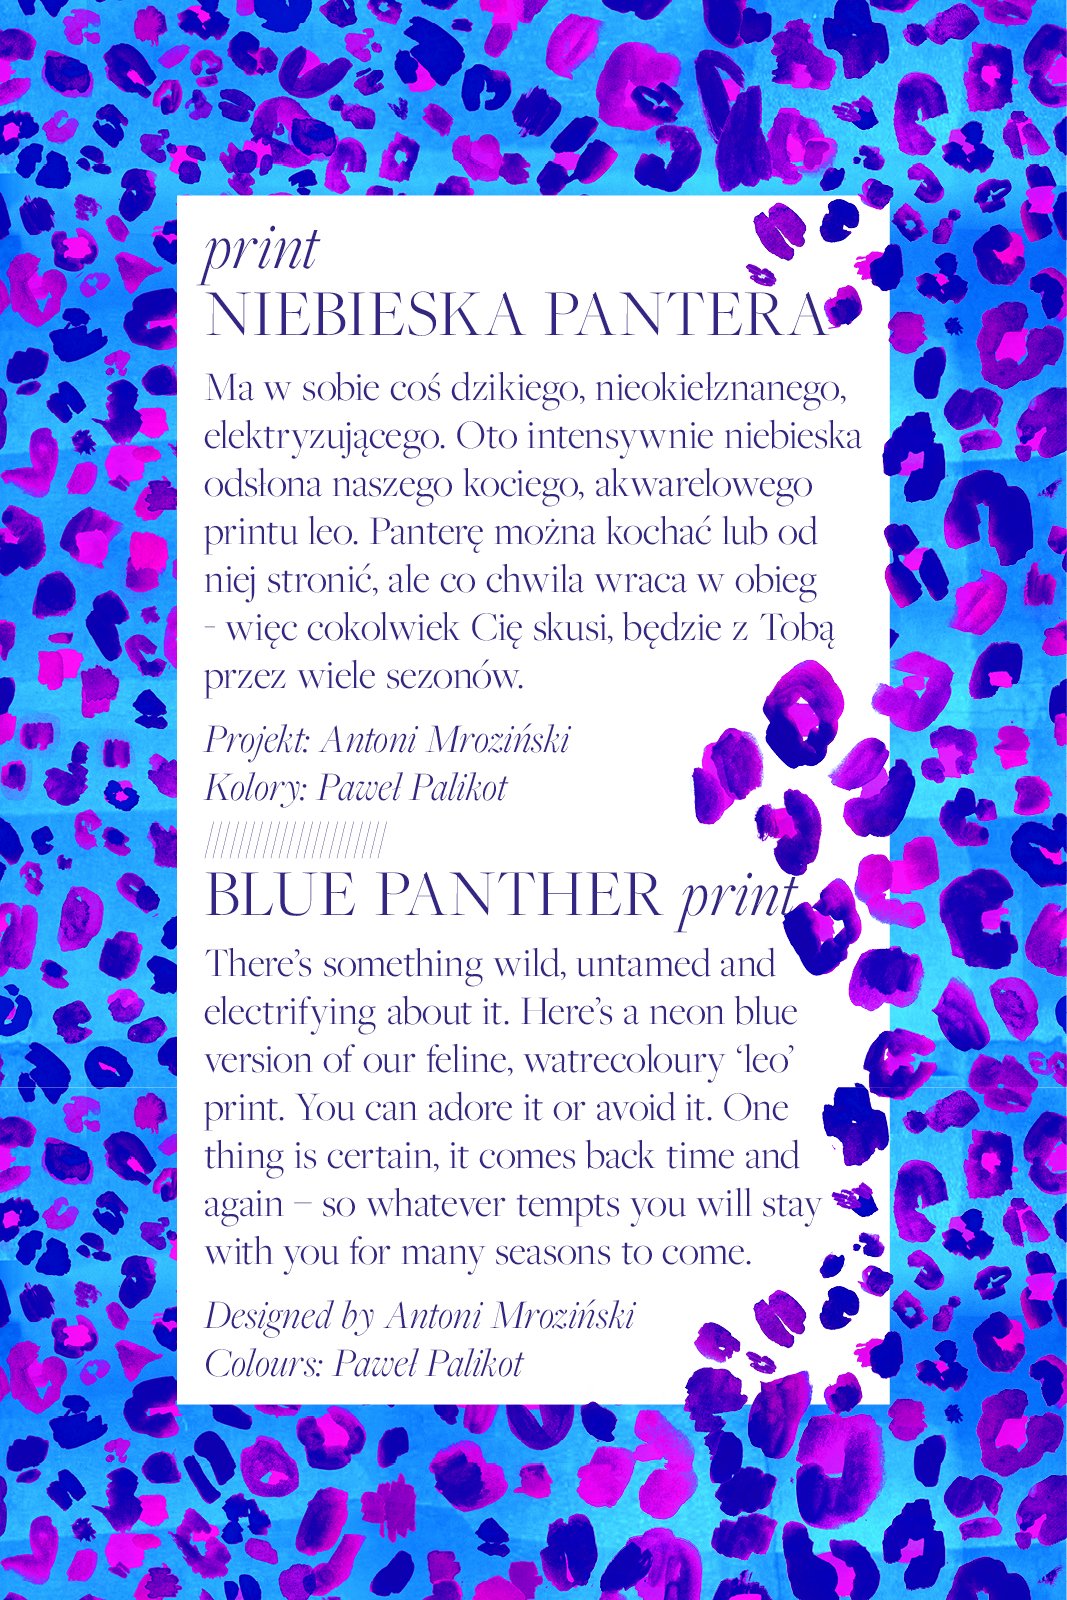 PETARD blue panther print